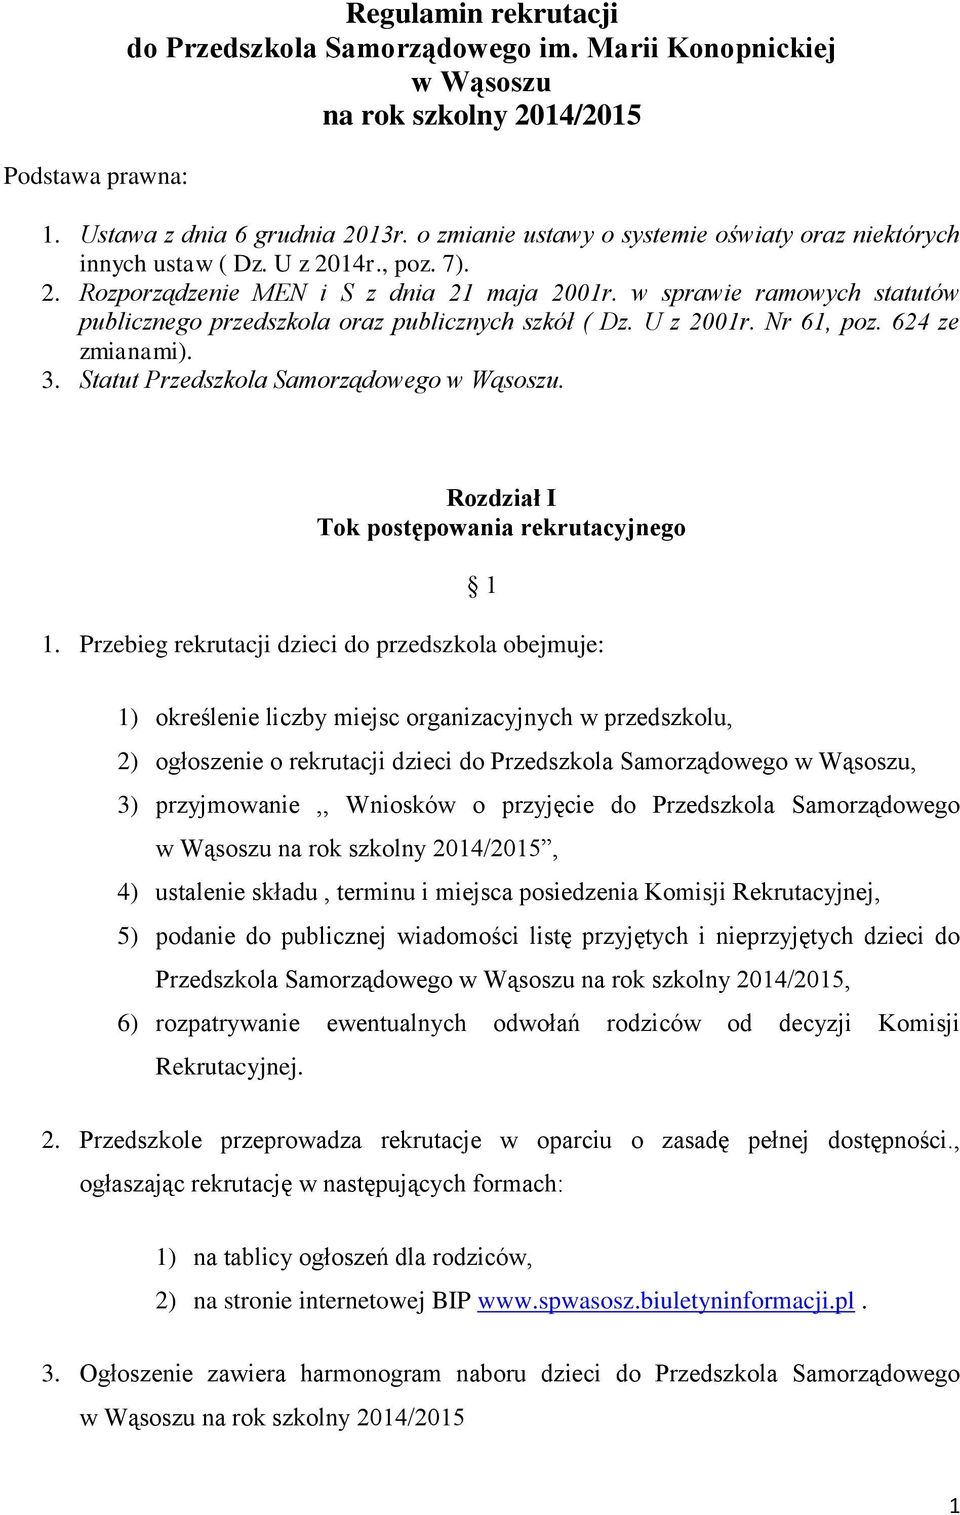 w sprawie ramowych statutów publicznego przedszkola oraz publicznych szkół ( Dz. U z 2001r. Nr 61, poz. 624 ze zmianami). 3. Statut Przedszkola Samorządowego w Wąsoszu.